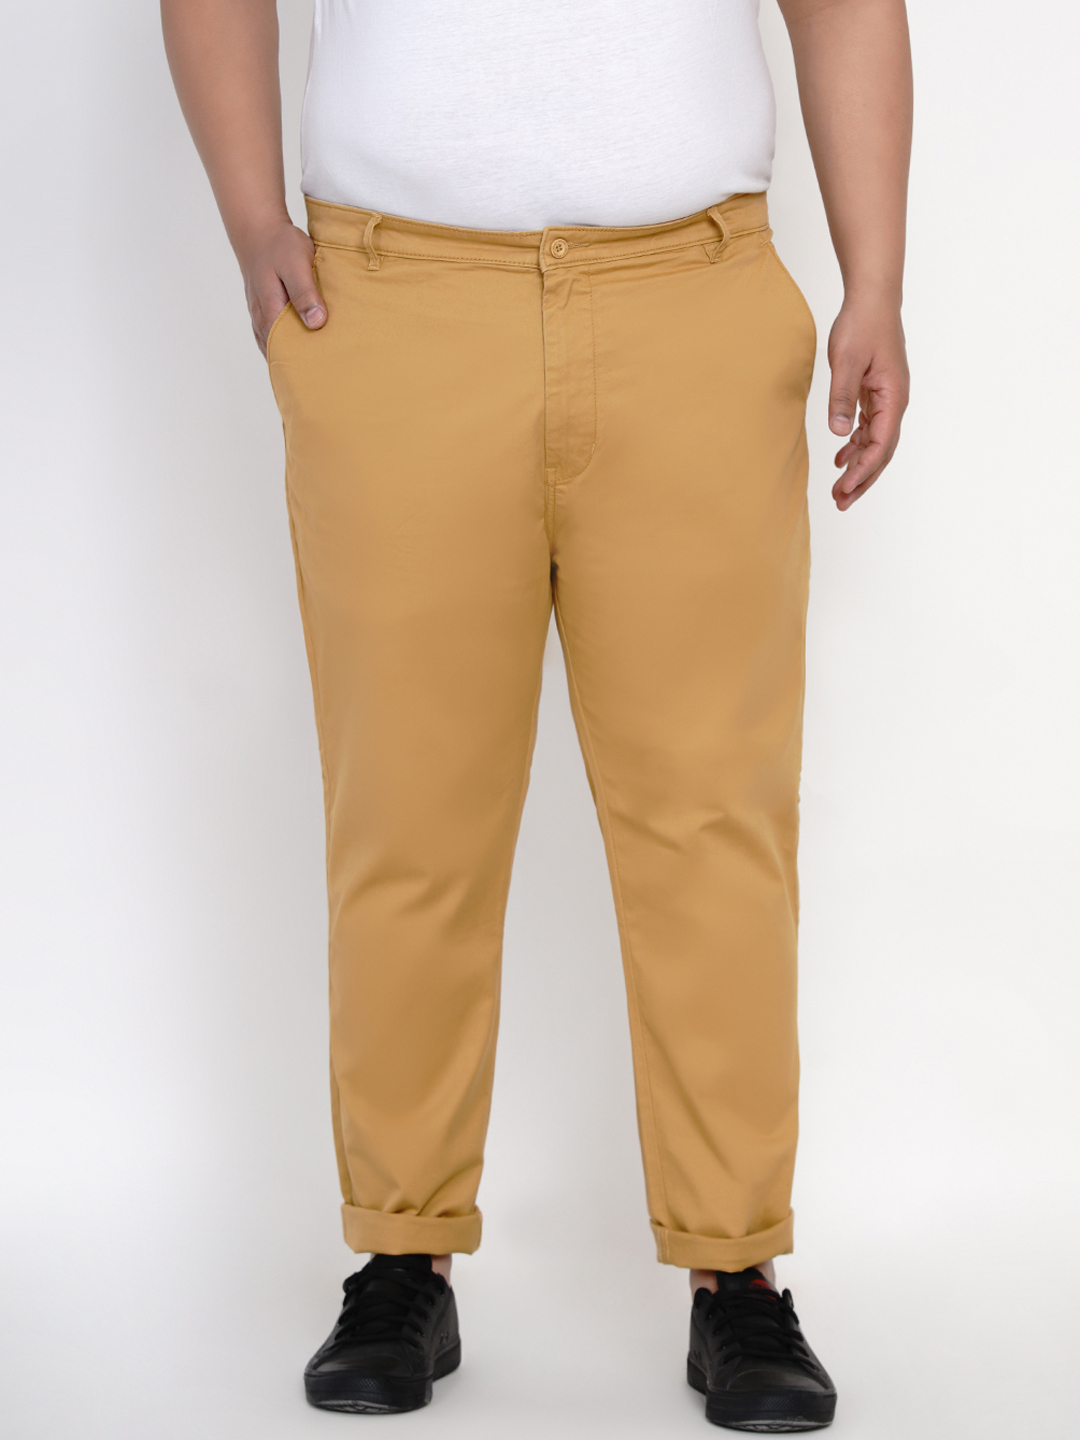 bottomwear/trousers/JPTR2161A/jptr2161a-1.jpg